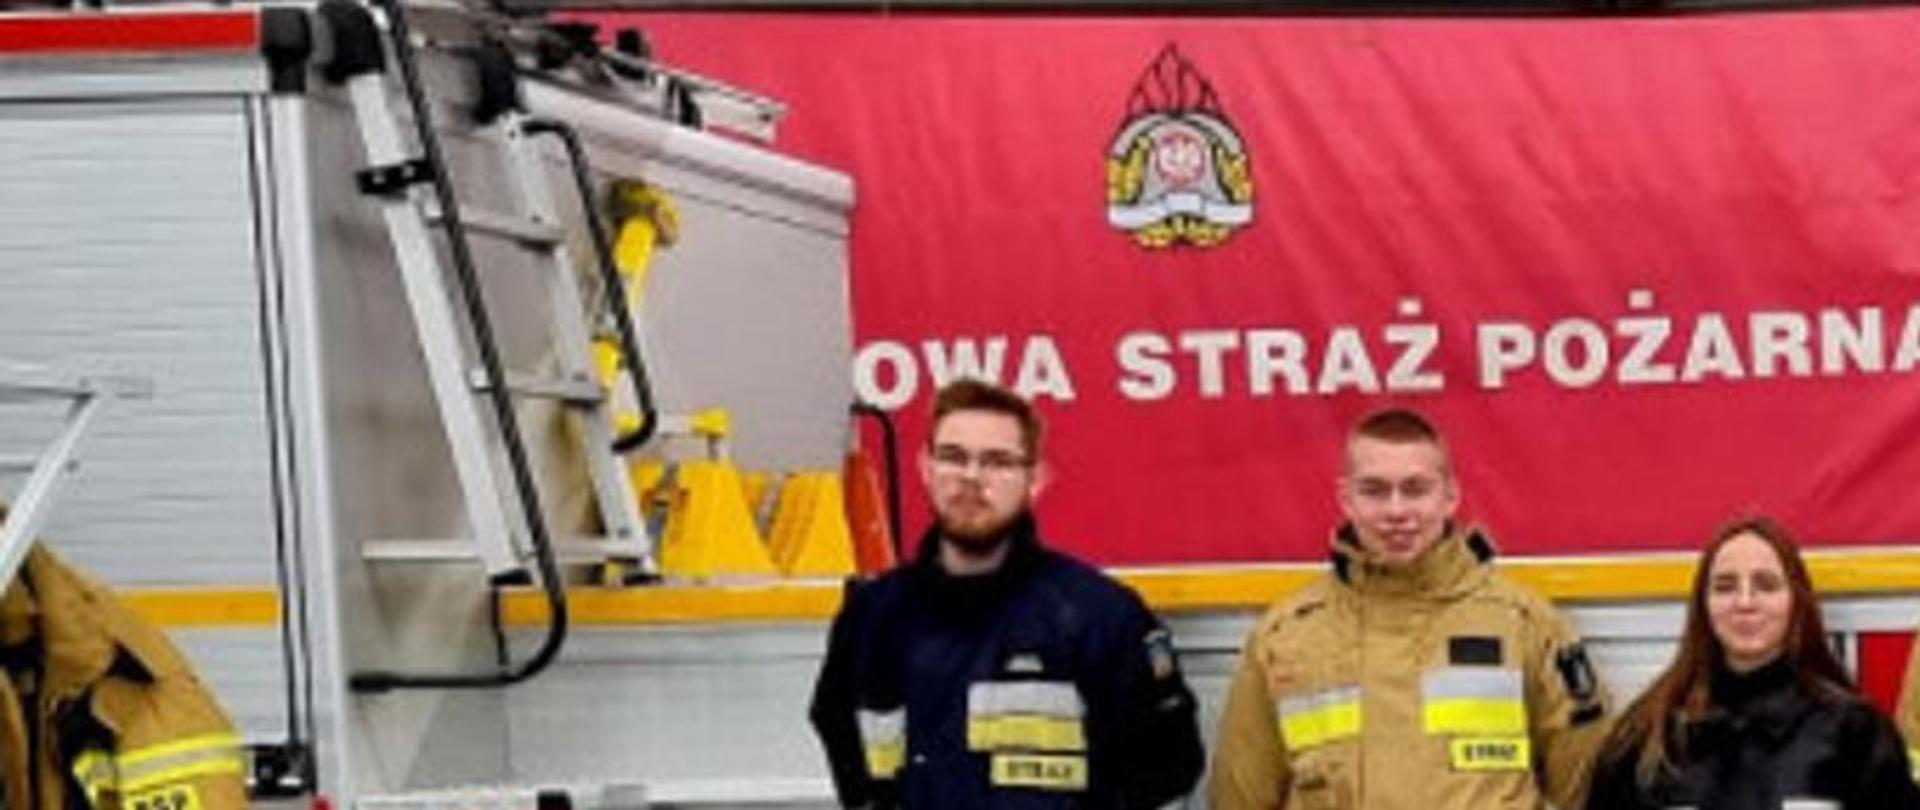 Zdjęcie przedstawia ośmiu strażaków stojących przy wozie pożarniczym